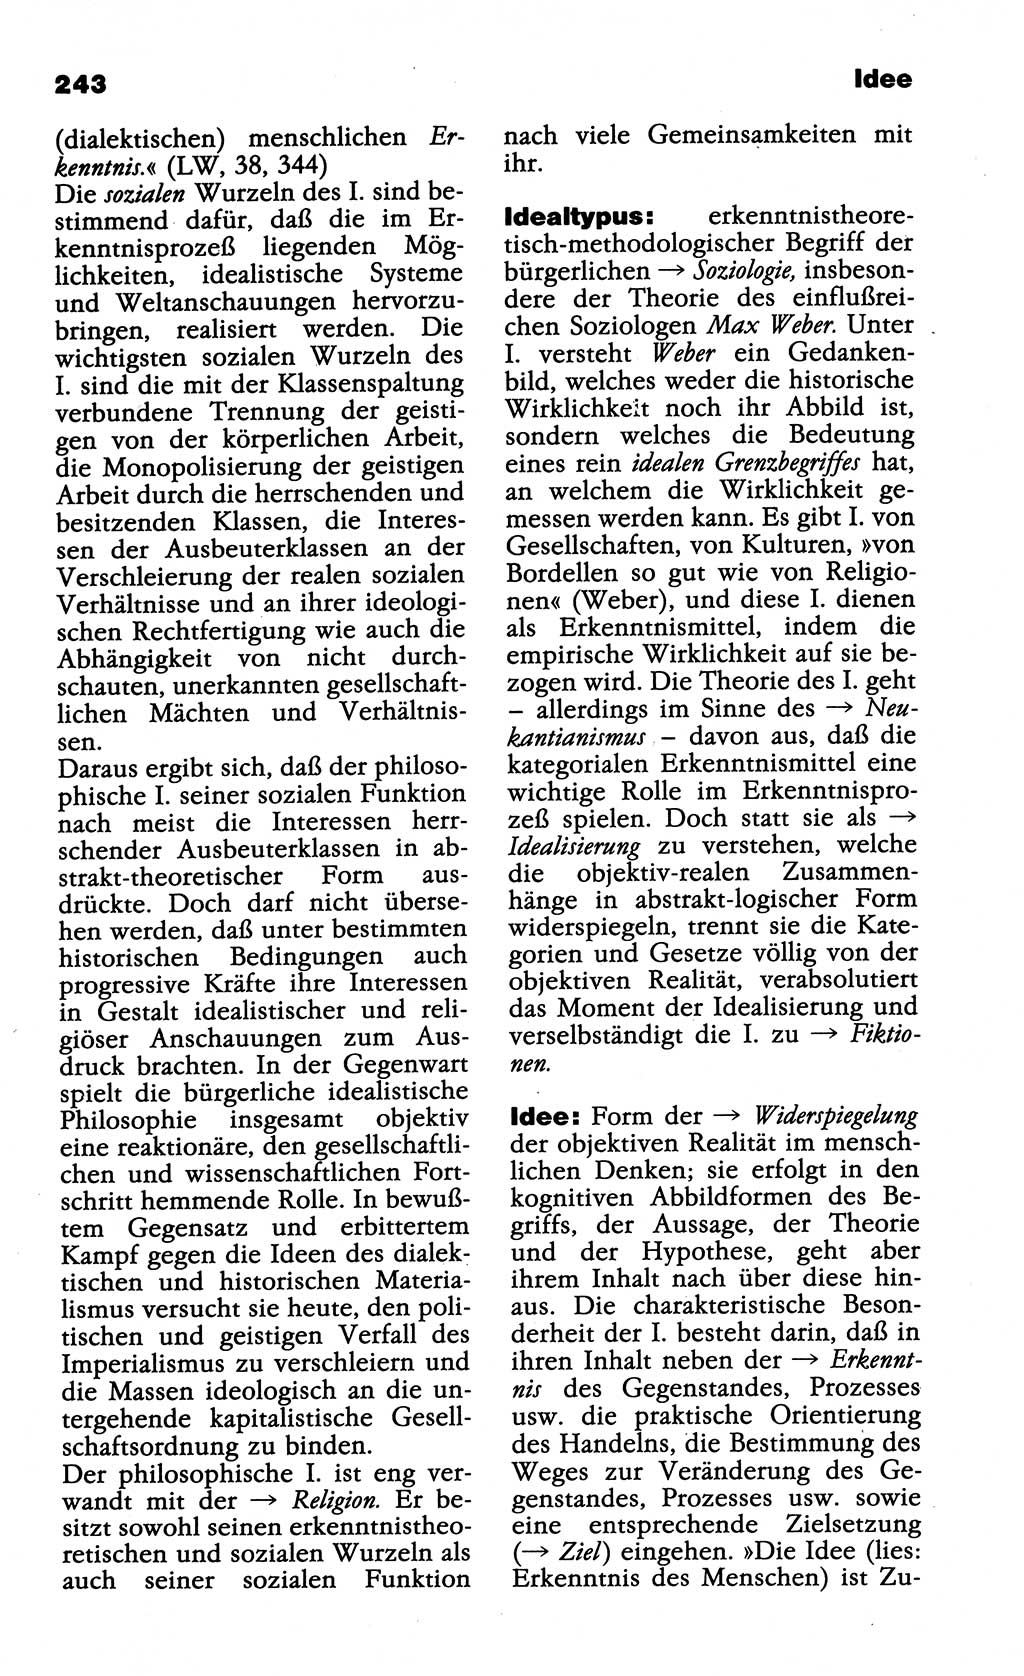 Wörterbuch der marxistisch-leninistischen Philosophie [Deutsche Demokratische Republik (DDR)] 1985, Seite 243 (Wb. ML Phil. DDR 1985, S. 243)